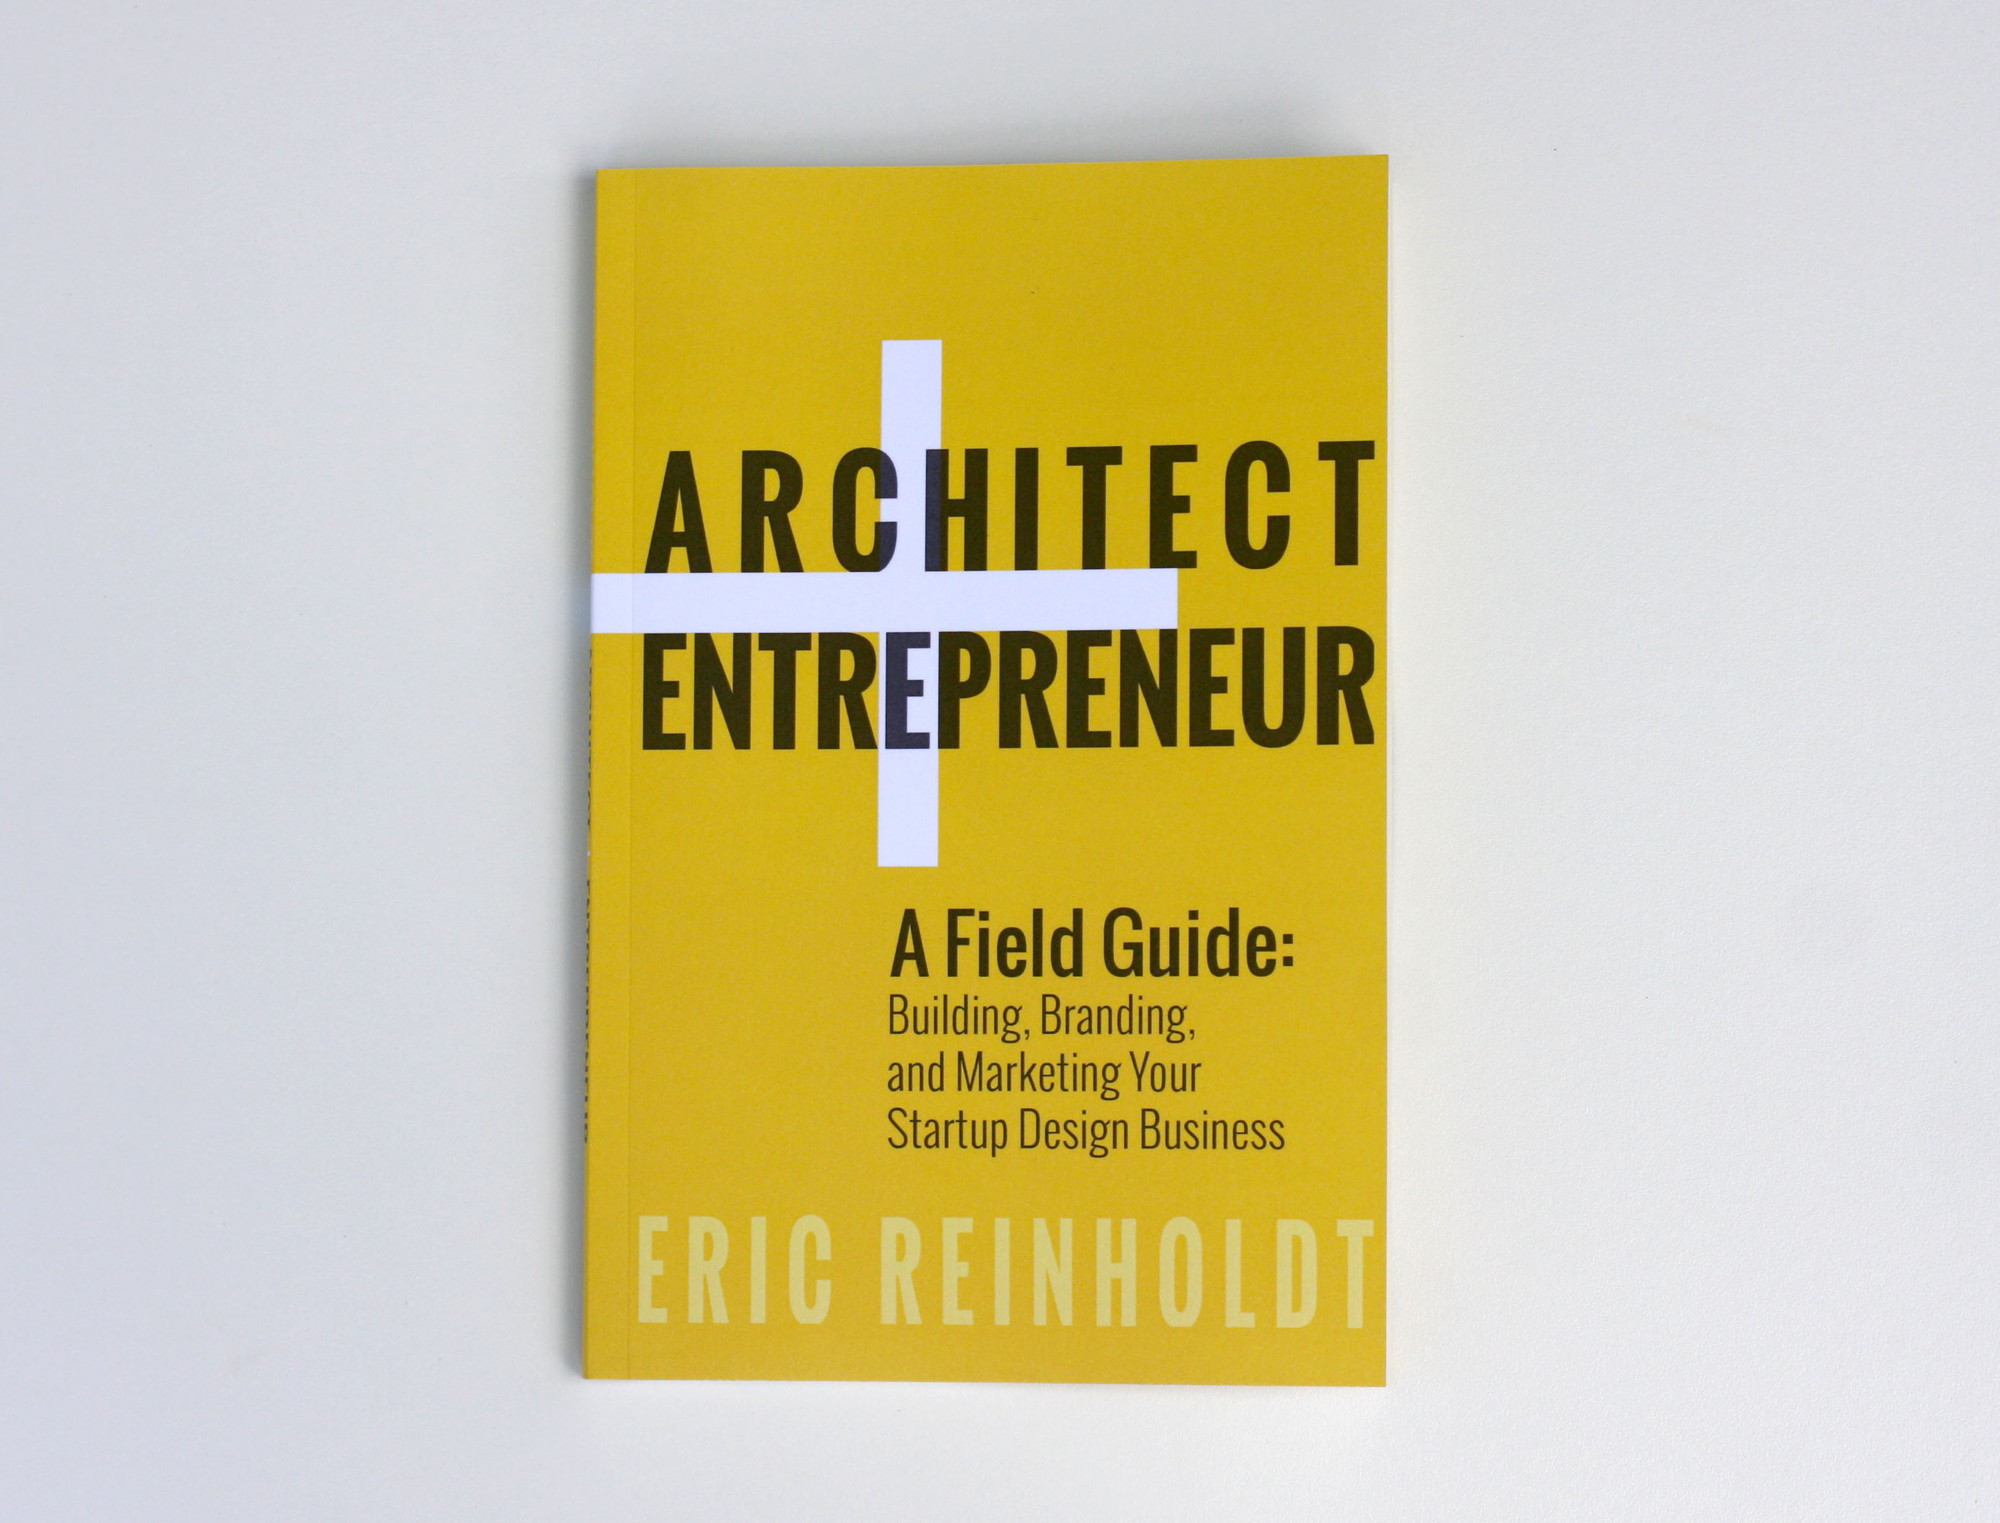 Architect entrepeneur book